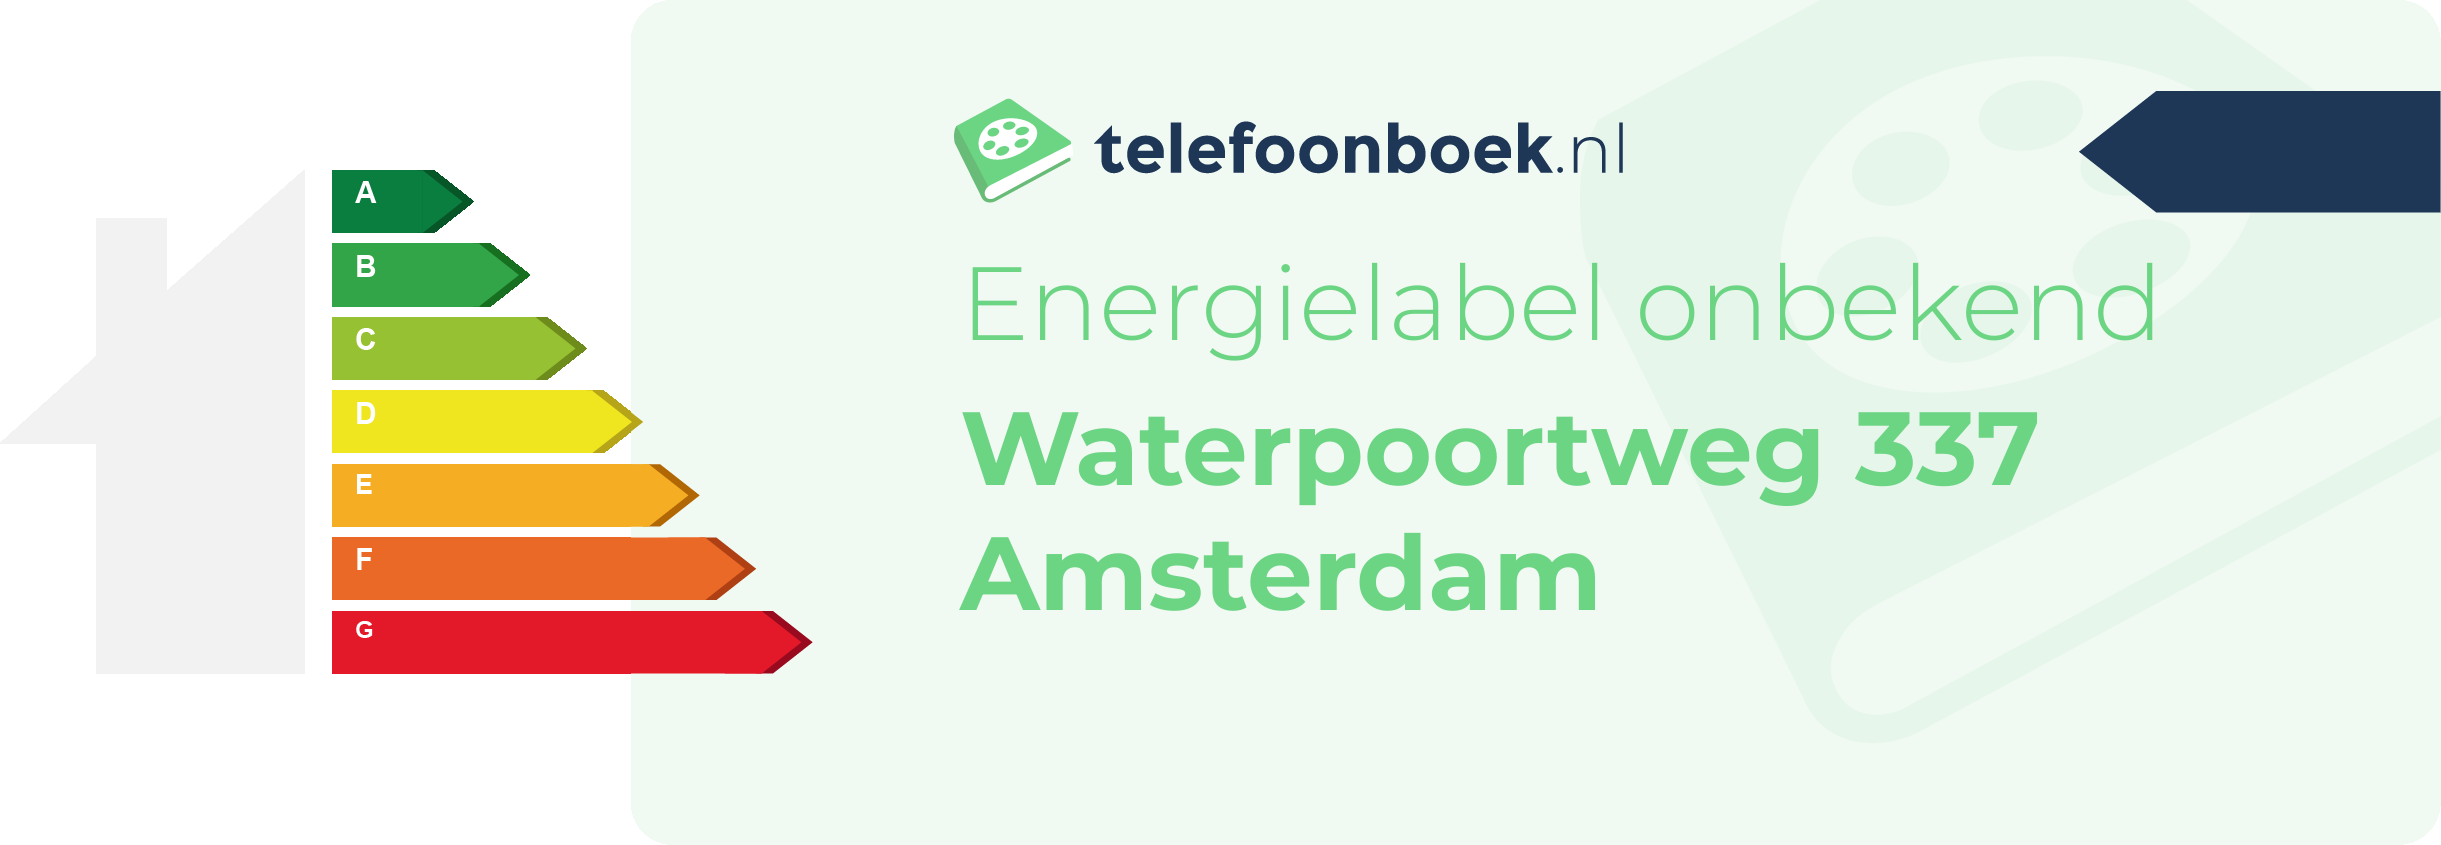 Energielabel Waterpoortweg 337 Amsterdam